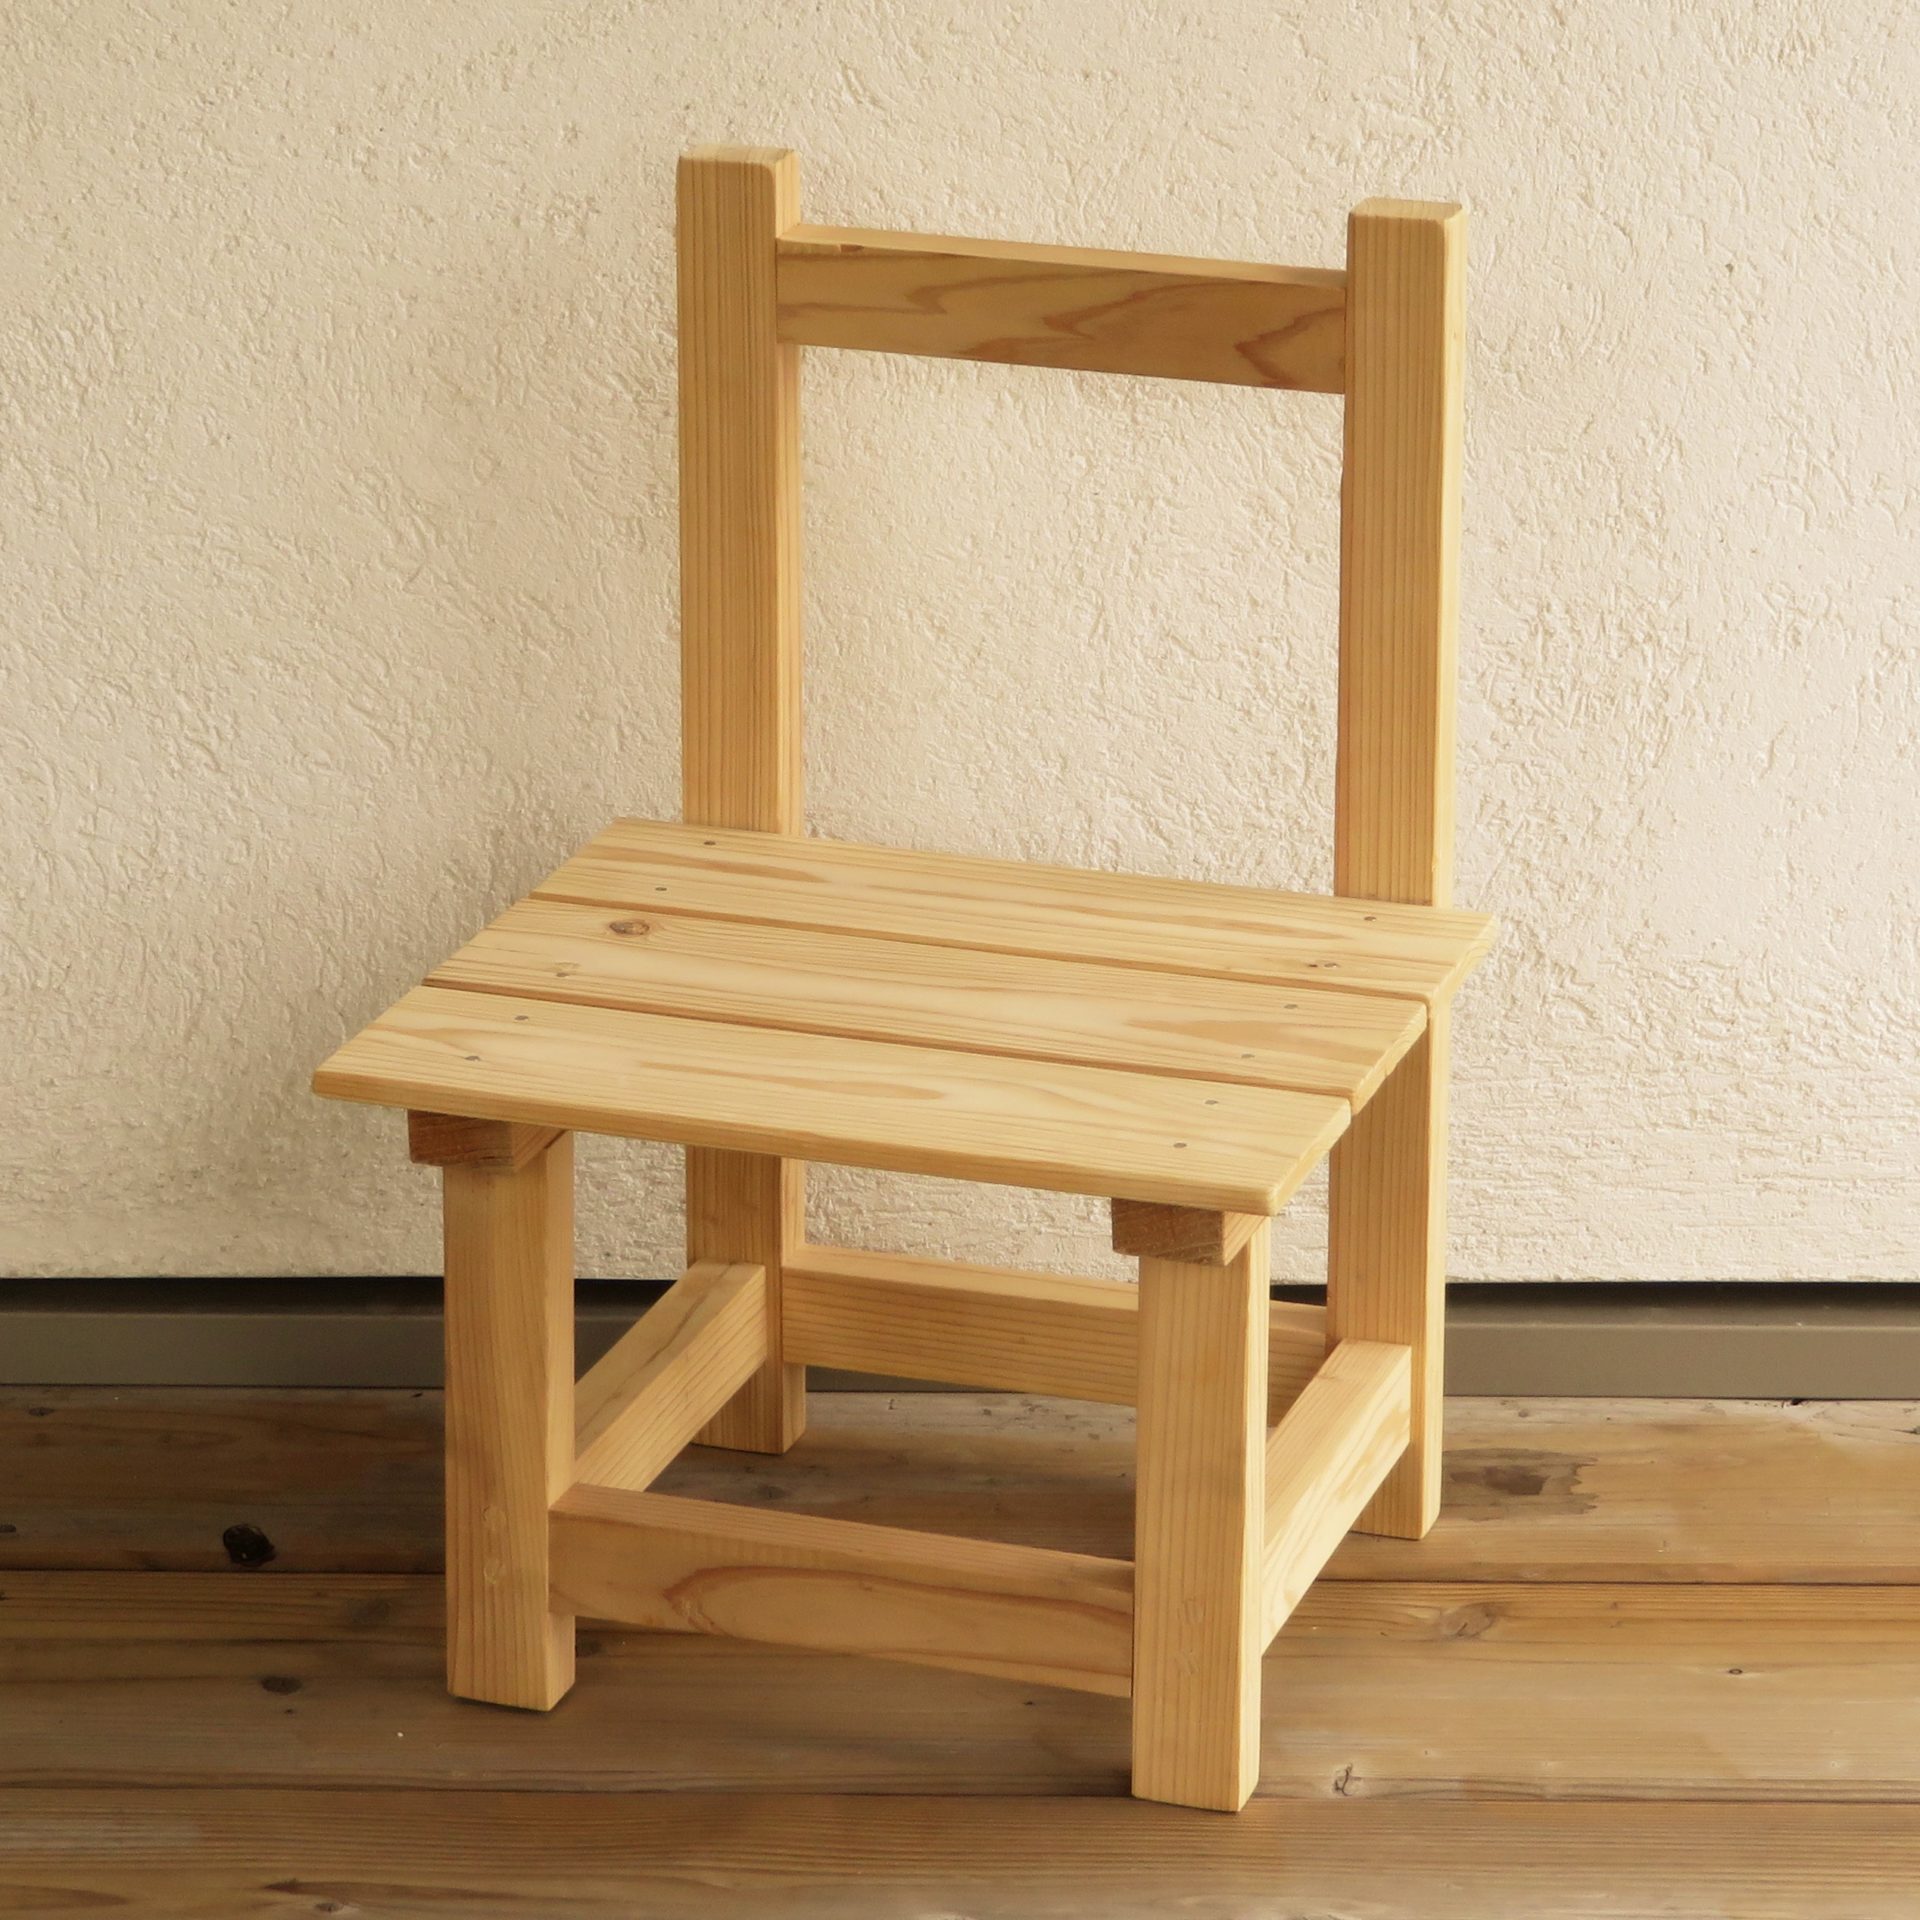 木製家具